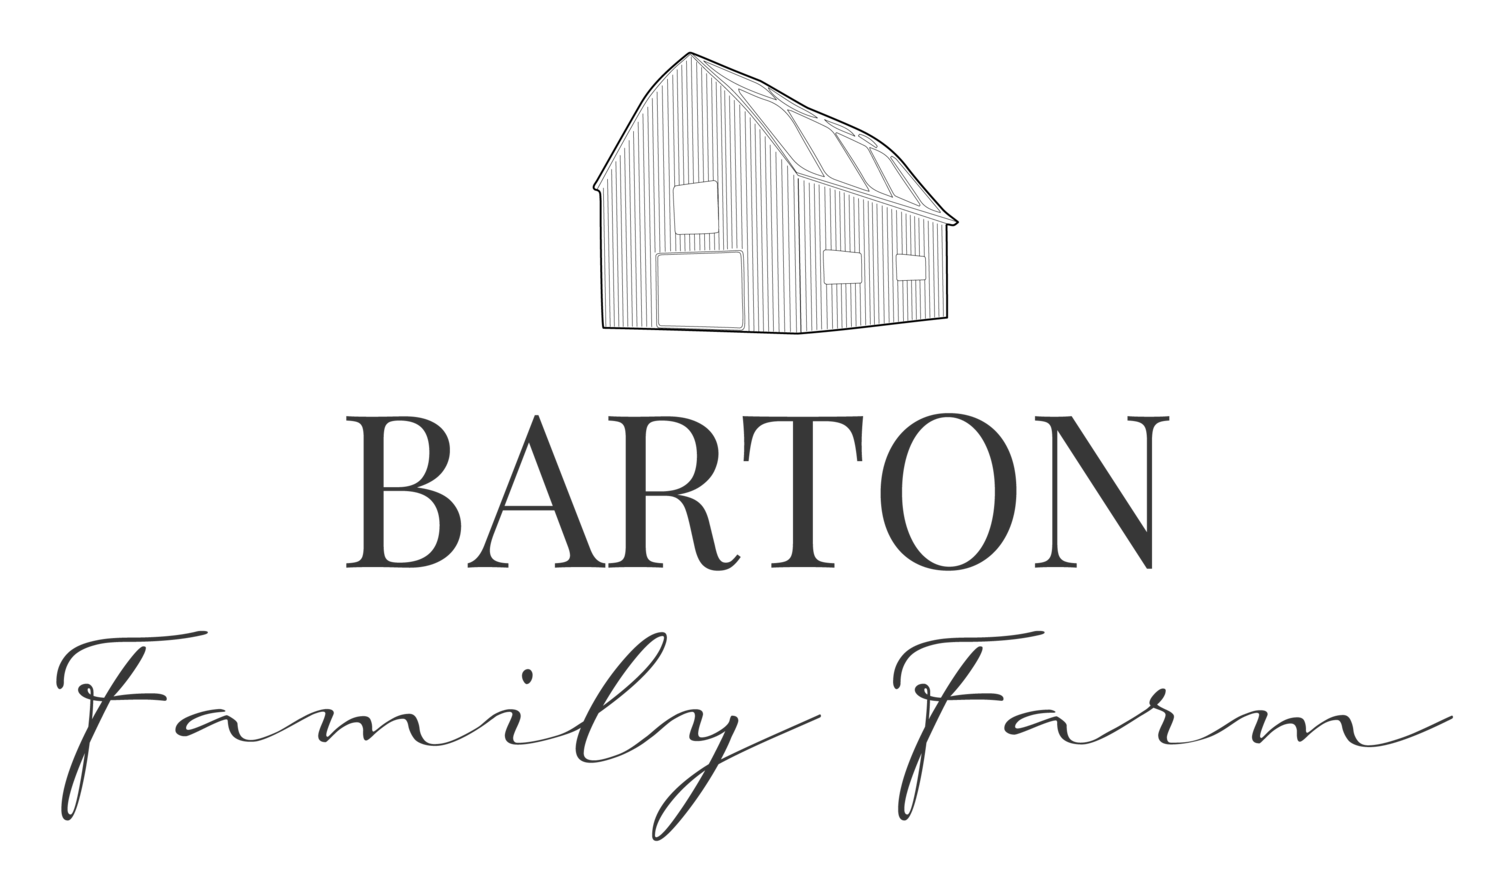 Barton Family Farm